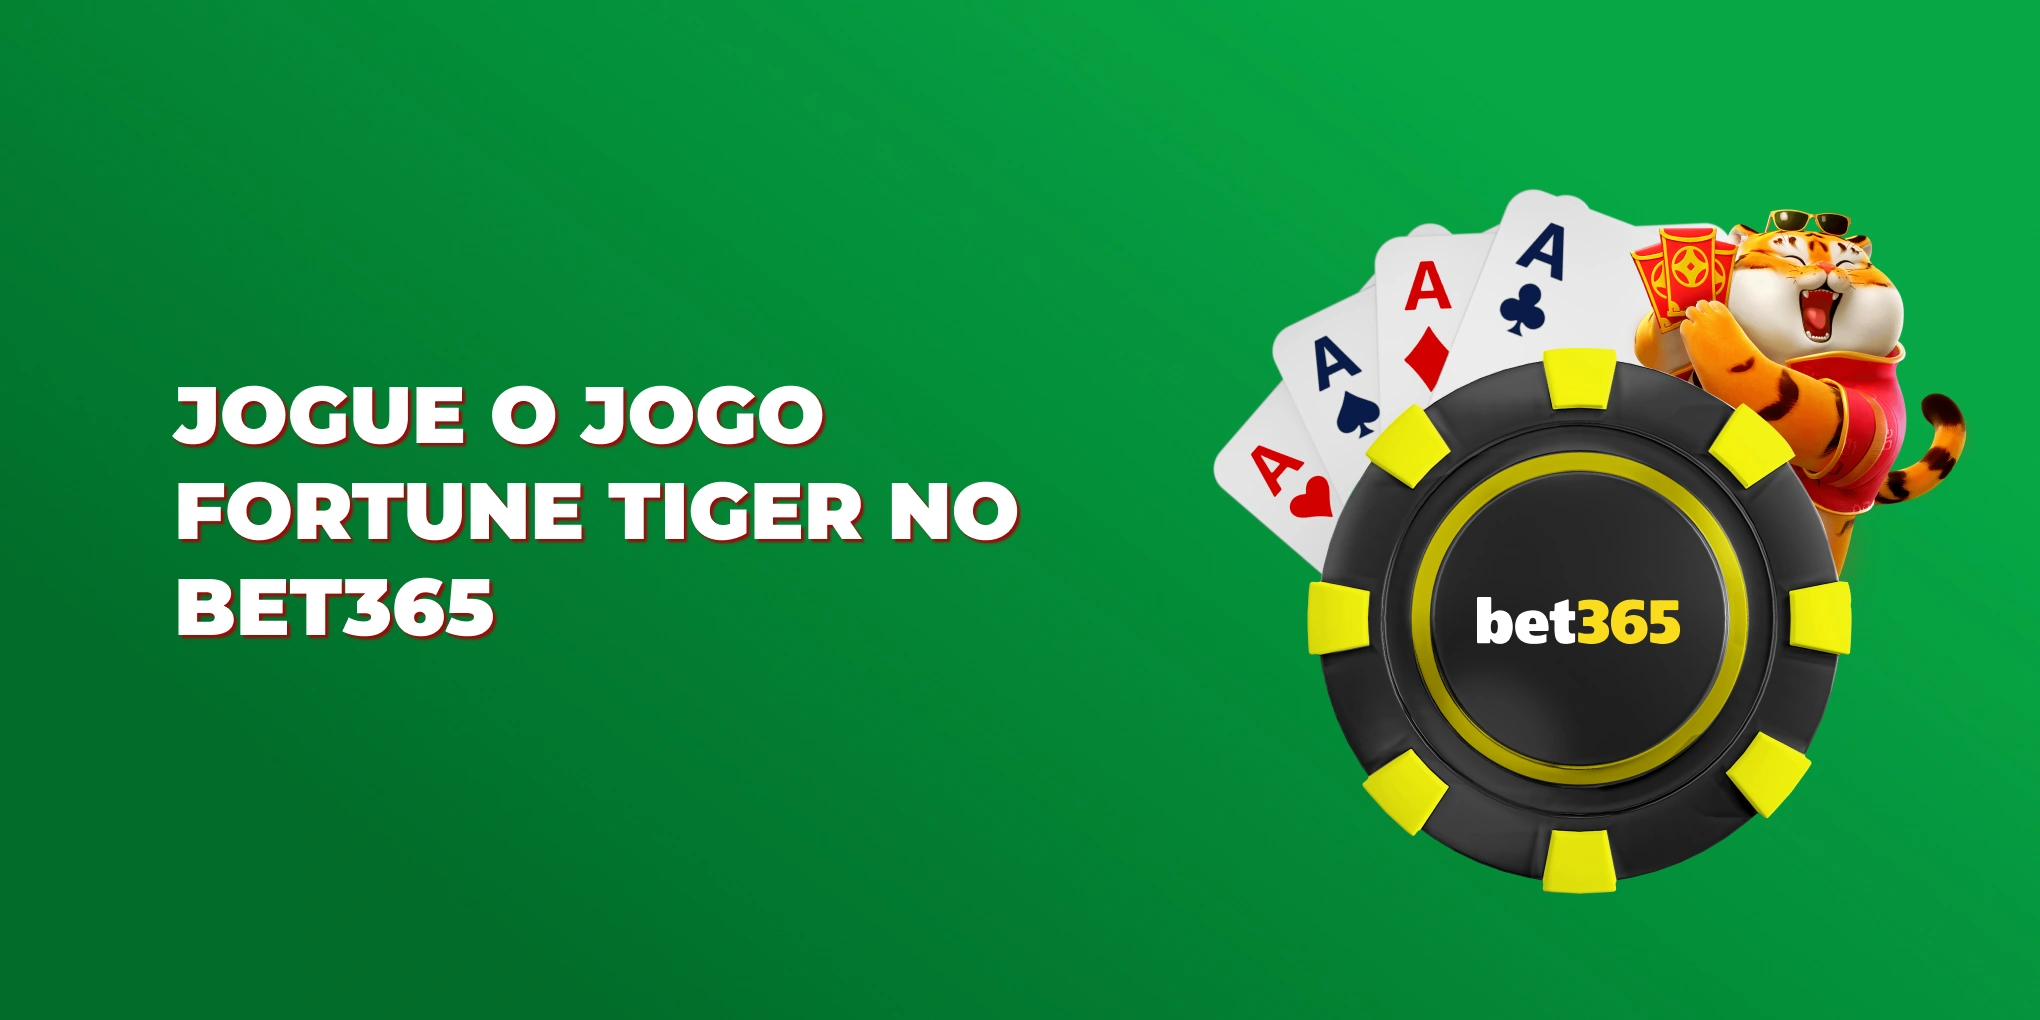 jogue o jogo fortune tiger no bet365